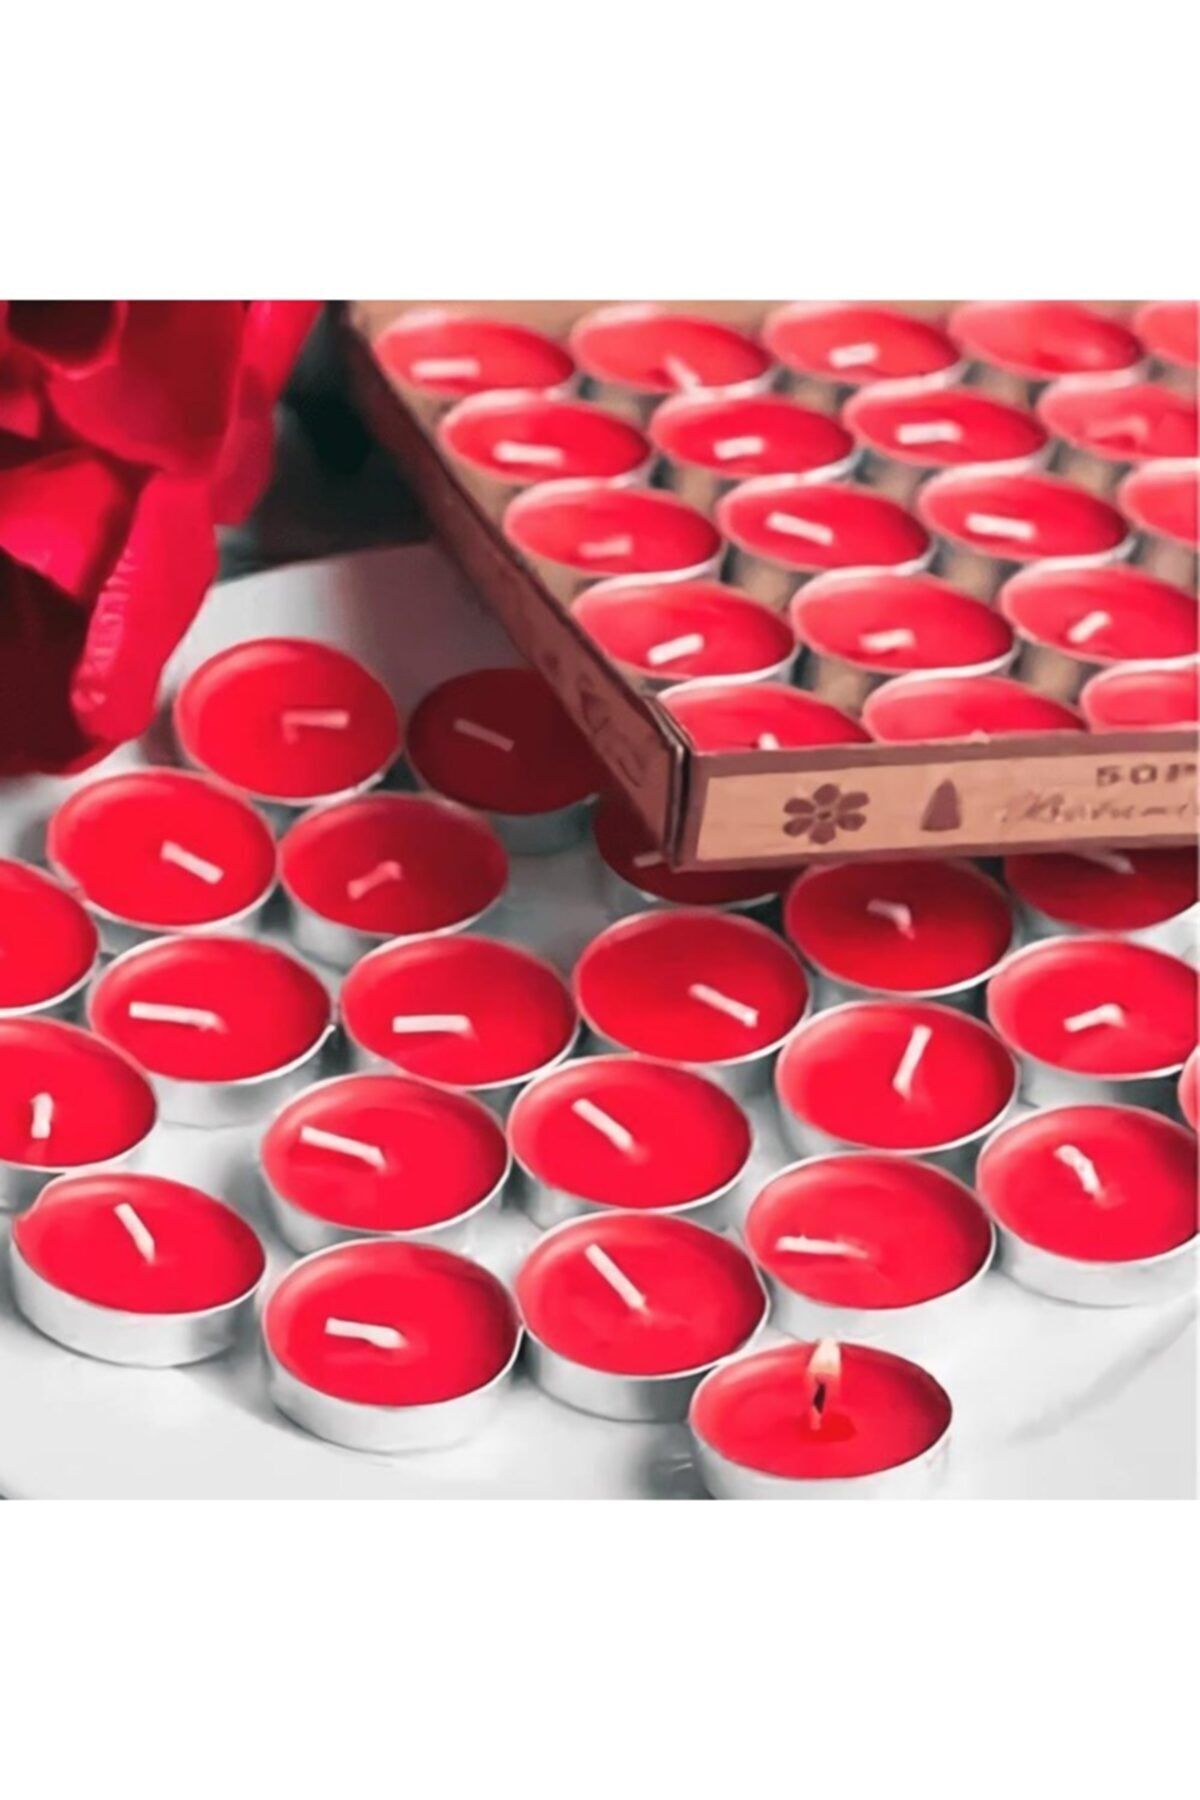 Deco Elit 1000 Adet Kuru Gül Yaprağı 25 Adet Kırmızı Tealight Mum Romantik Süsleme Fiyatı 